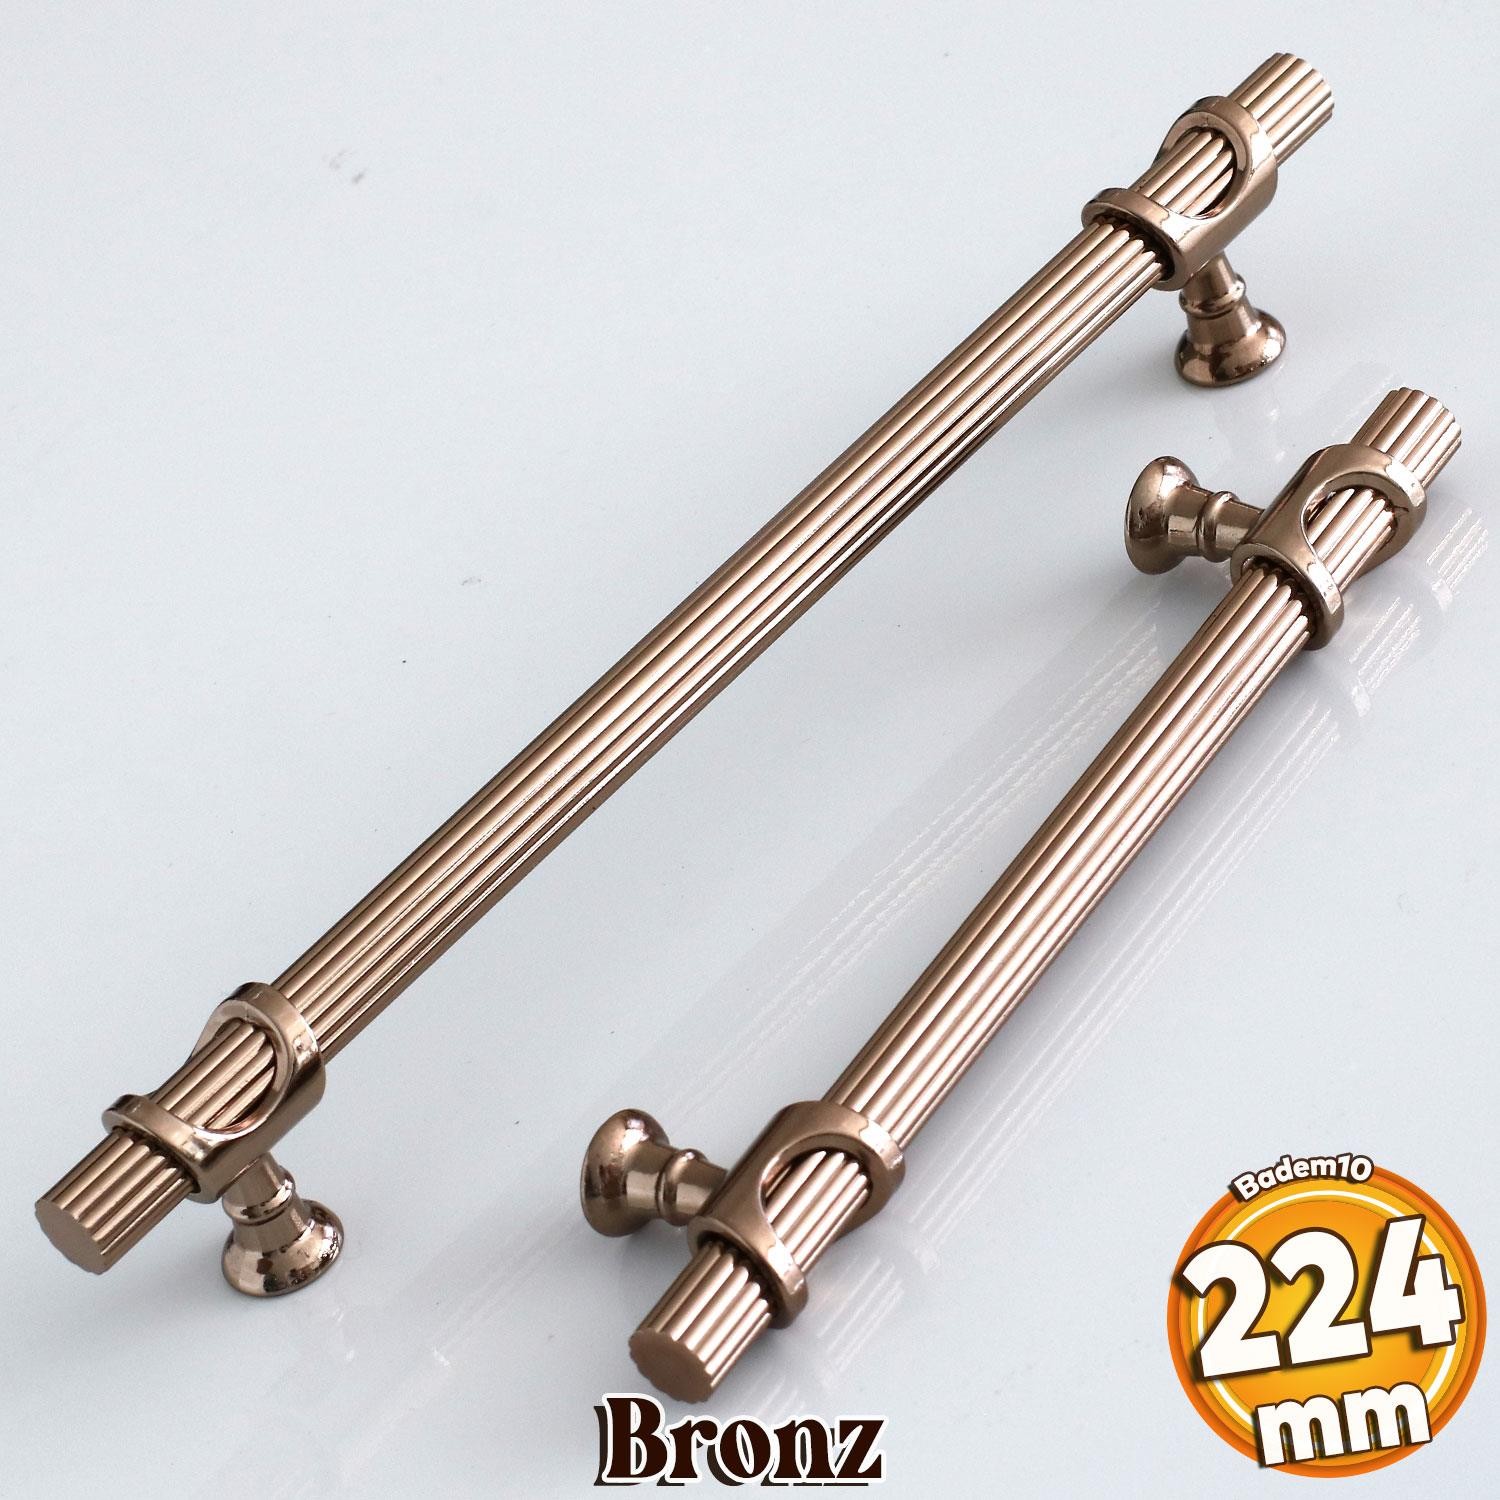 Arsin Bronz Metal Kulp 224 mm-22.4 cm Mobilya Dolap Çekmece Kapak Mutfak Dolabı Kulpları Kulbu Kulpu